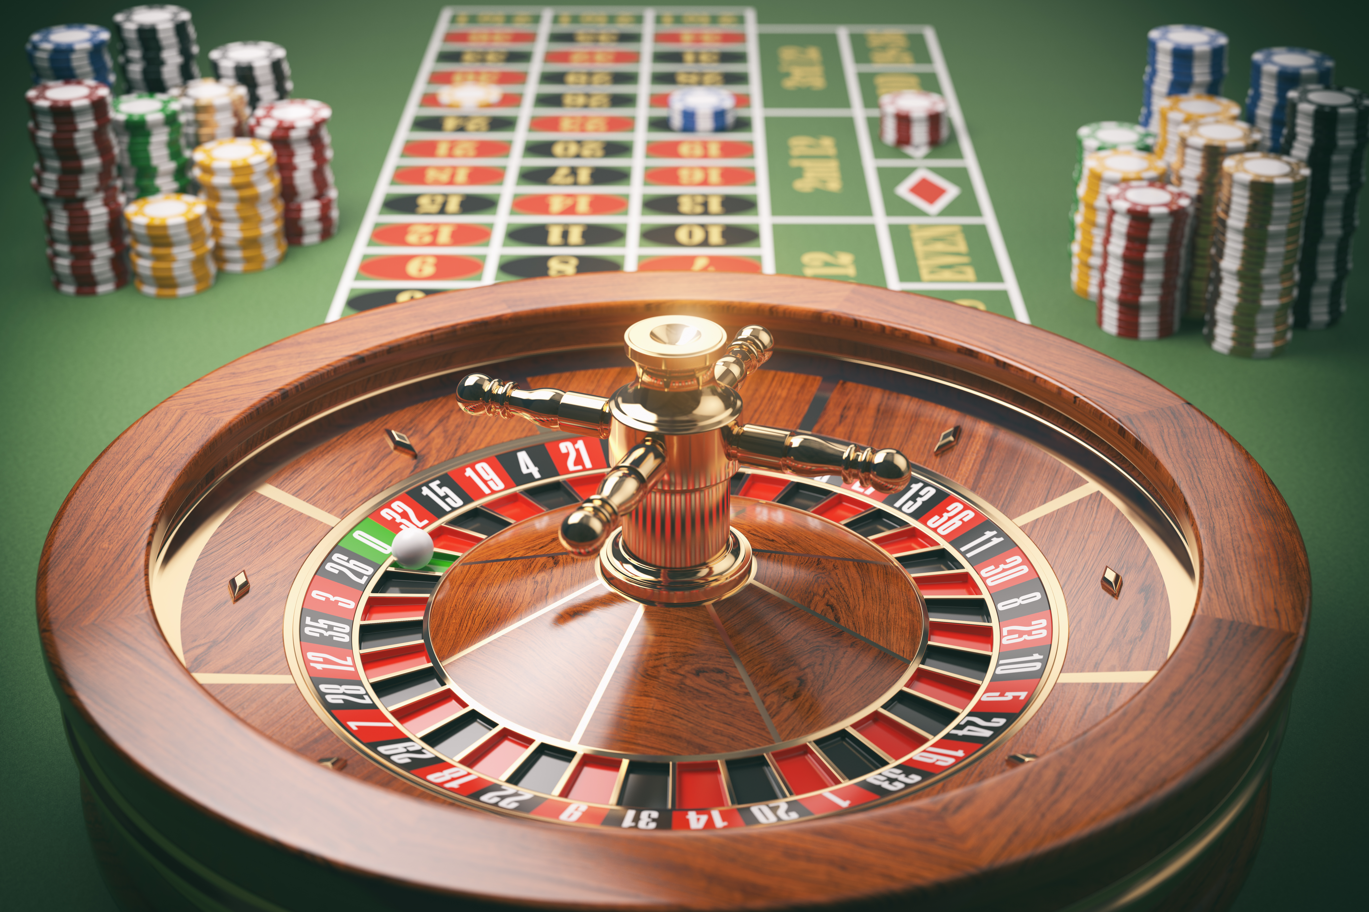 Nehmen Sie den Stress aus Online Casinos Österreich